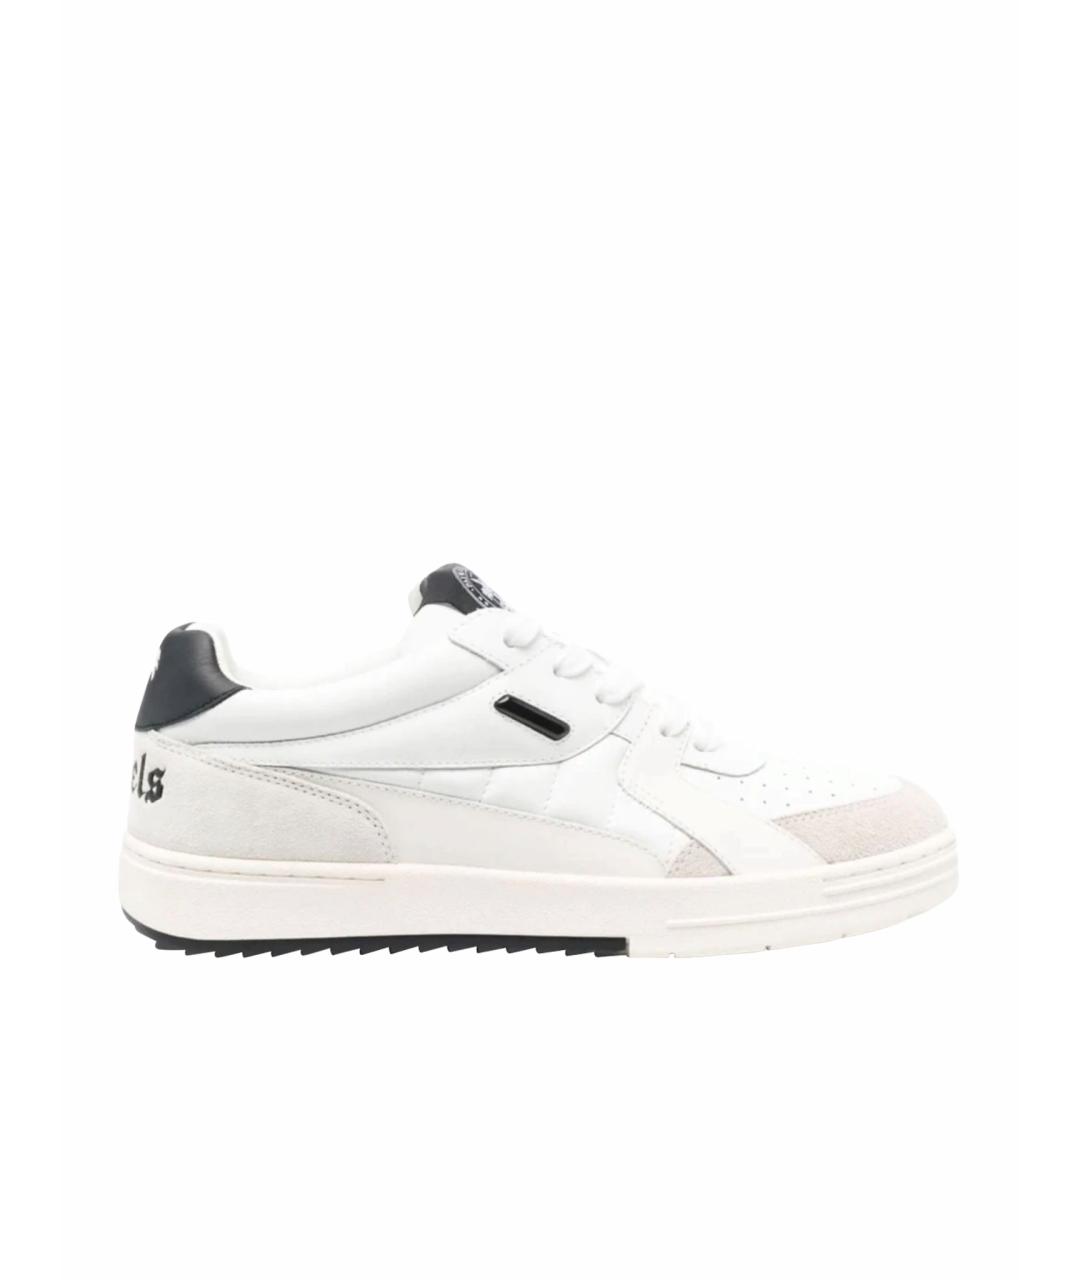 PALM ANGELS Белые кожаные низкие кроссовки / кеды, фото 1